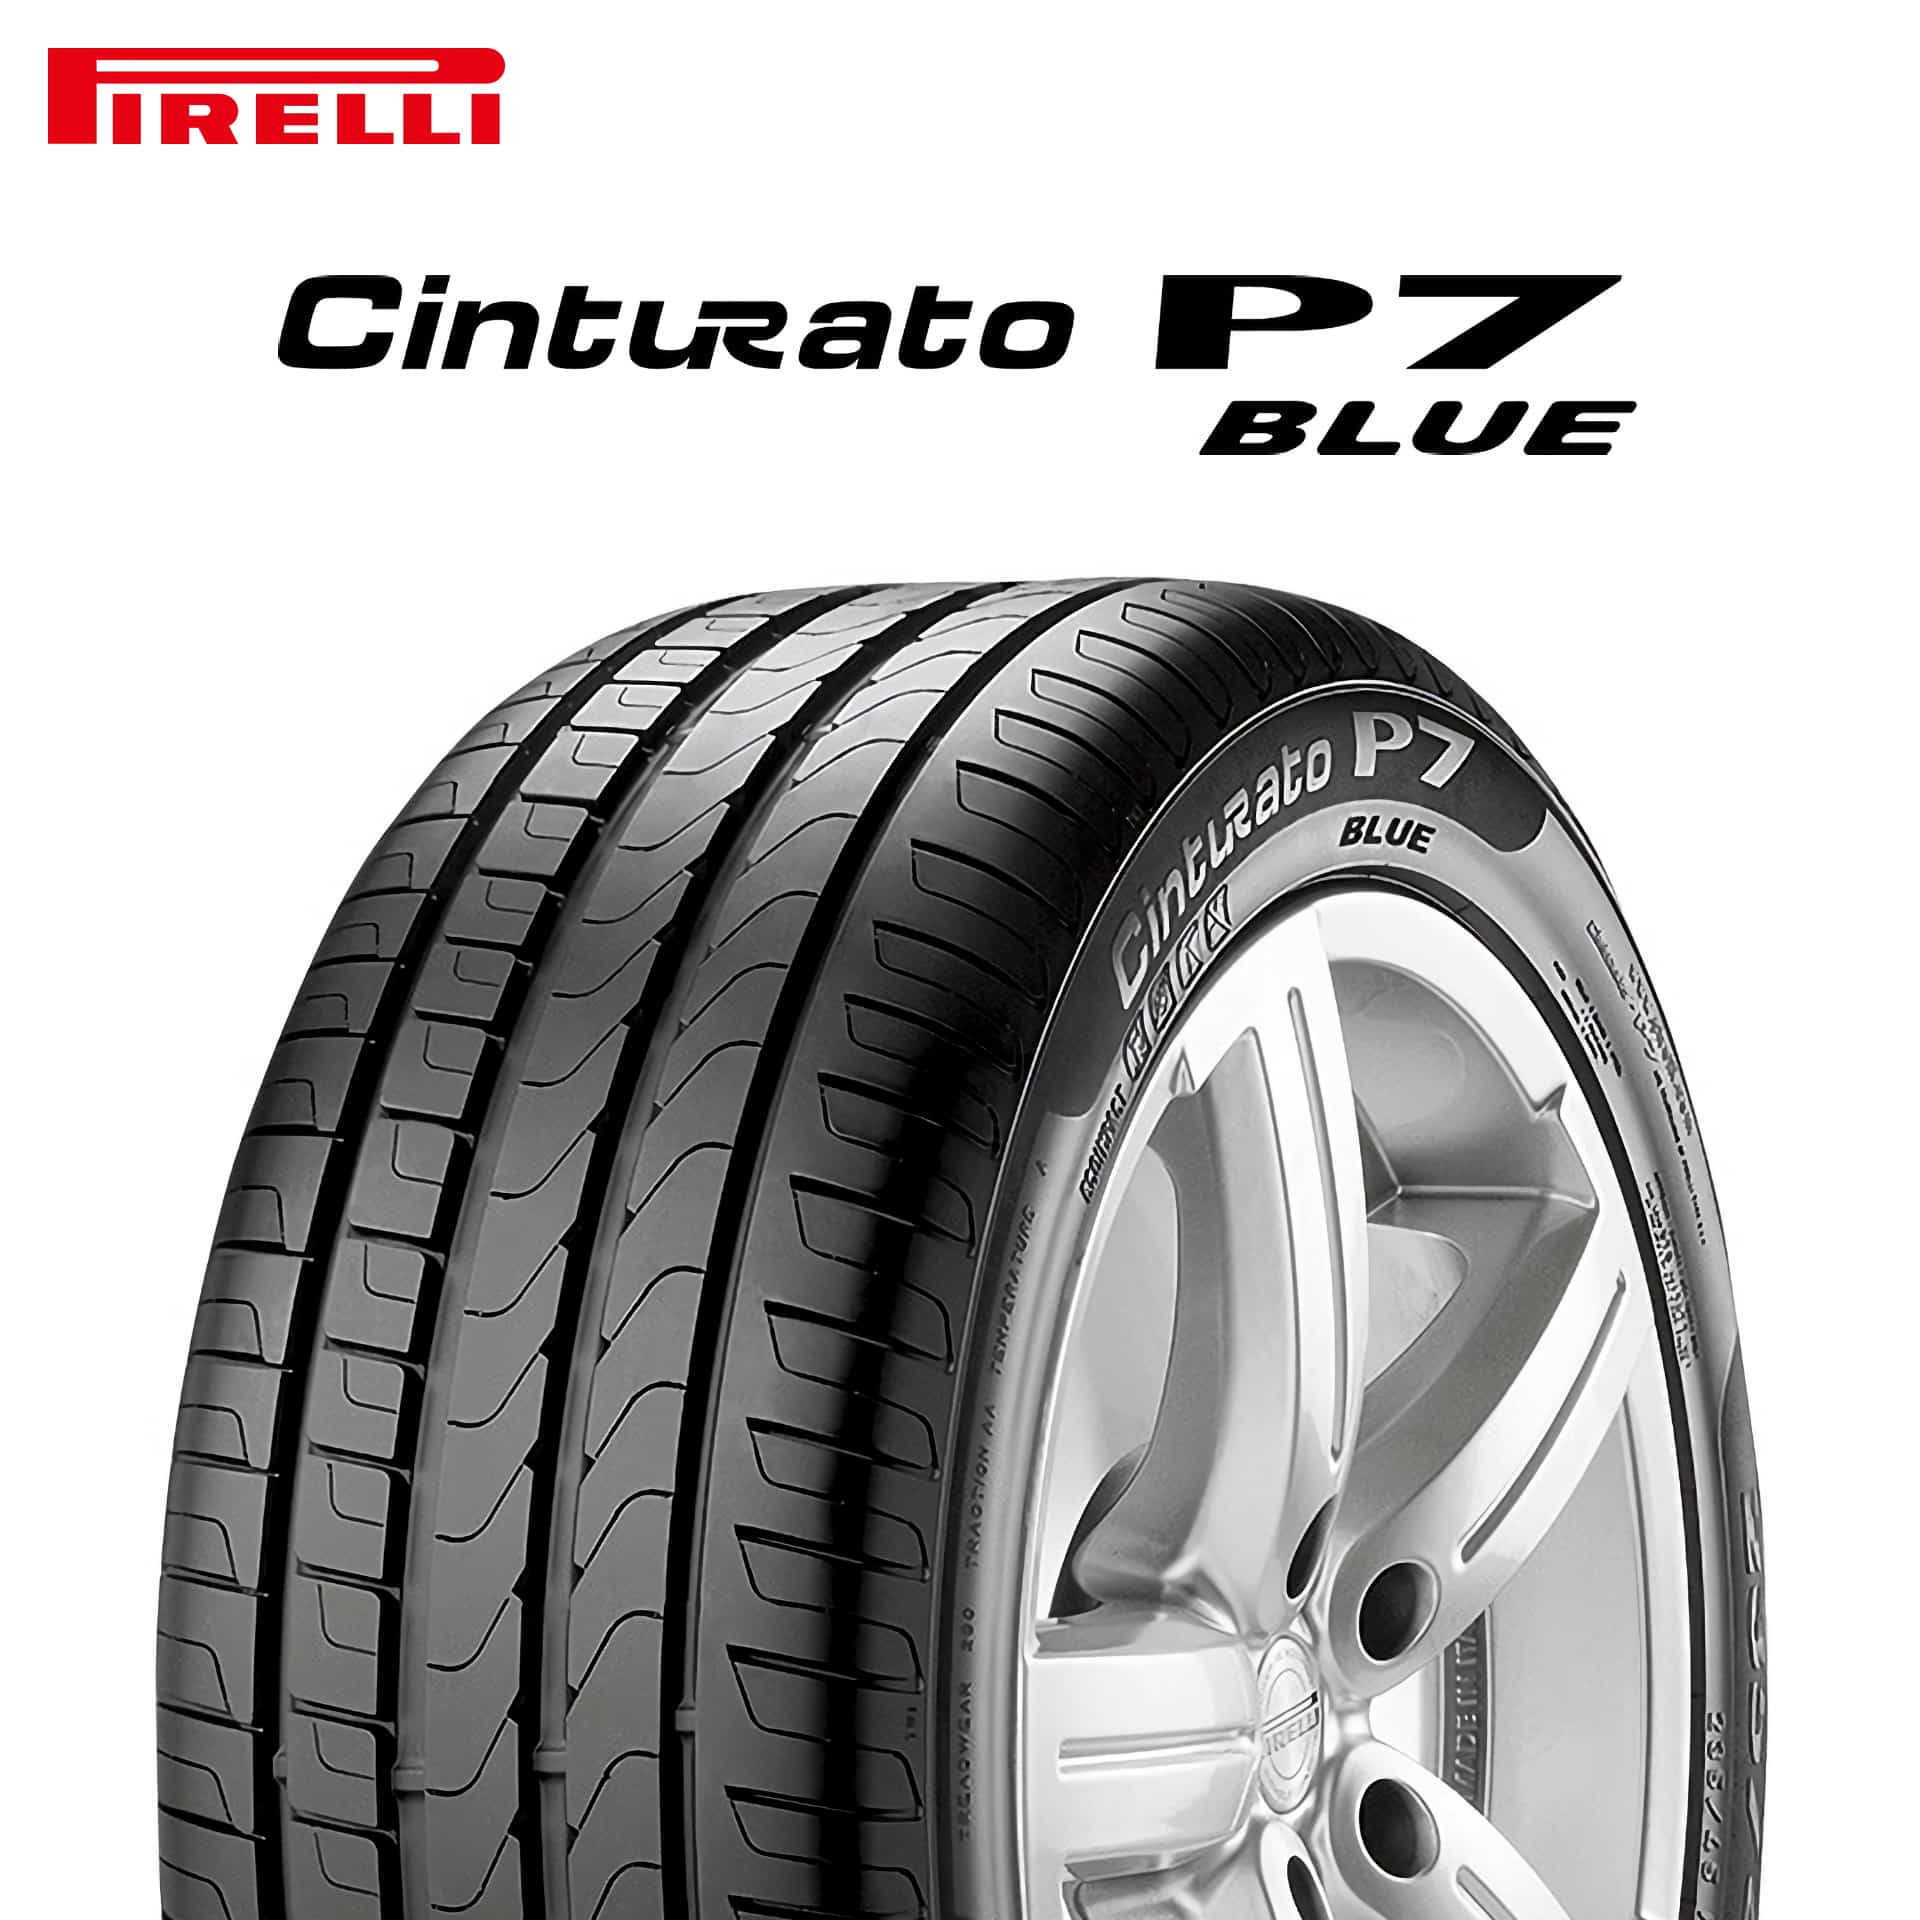 22年製 285/40R20 108Y XL NF0 ピレリ Cinturato P7 BLUE  ELECT (チントゥラートP7ブルー エレクト) ポルシェ承認タイヤ タイカン 20インチ 新品